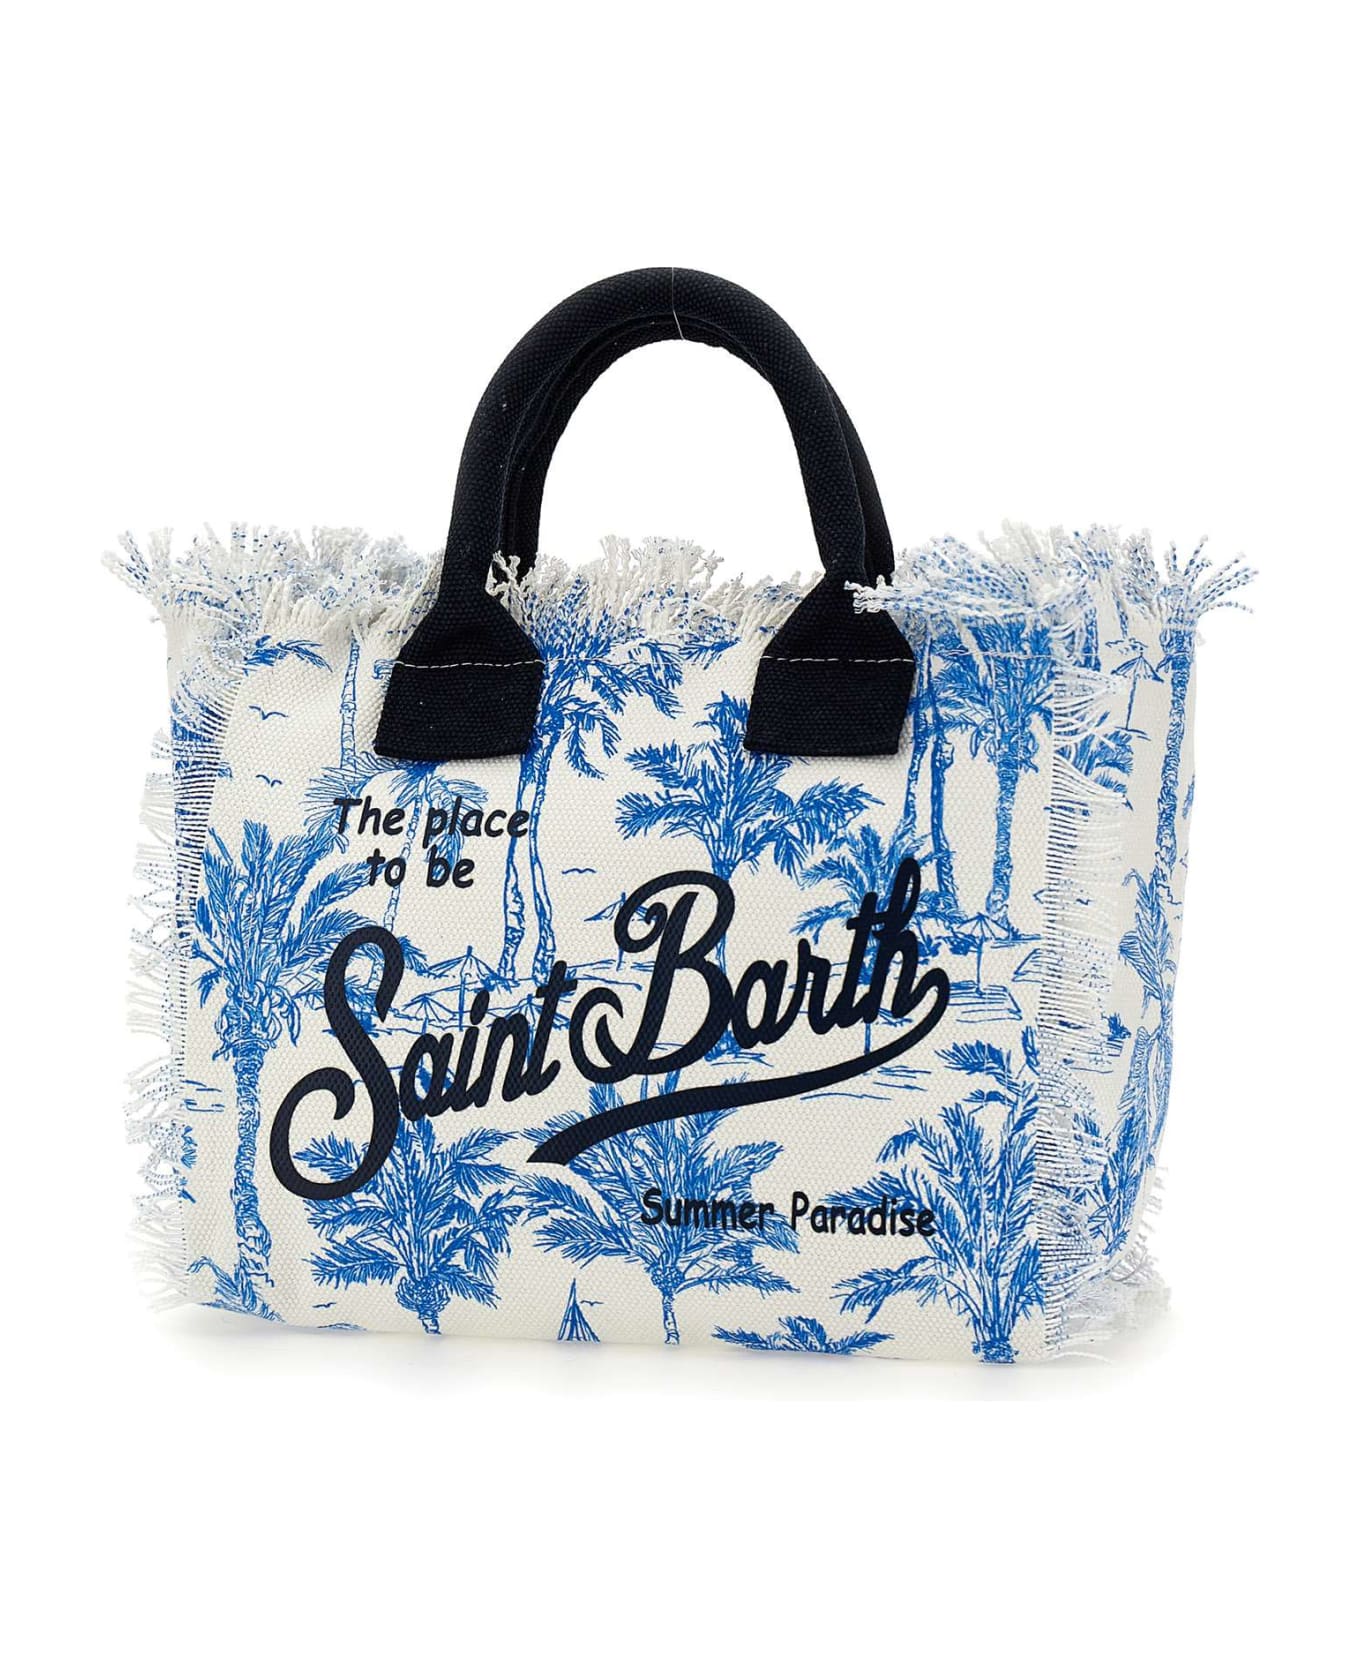 MC2 Saint Barth "colette" Bag - BLUE